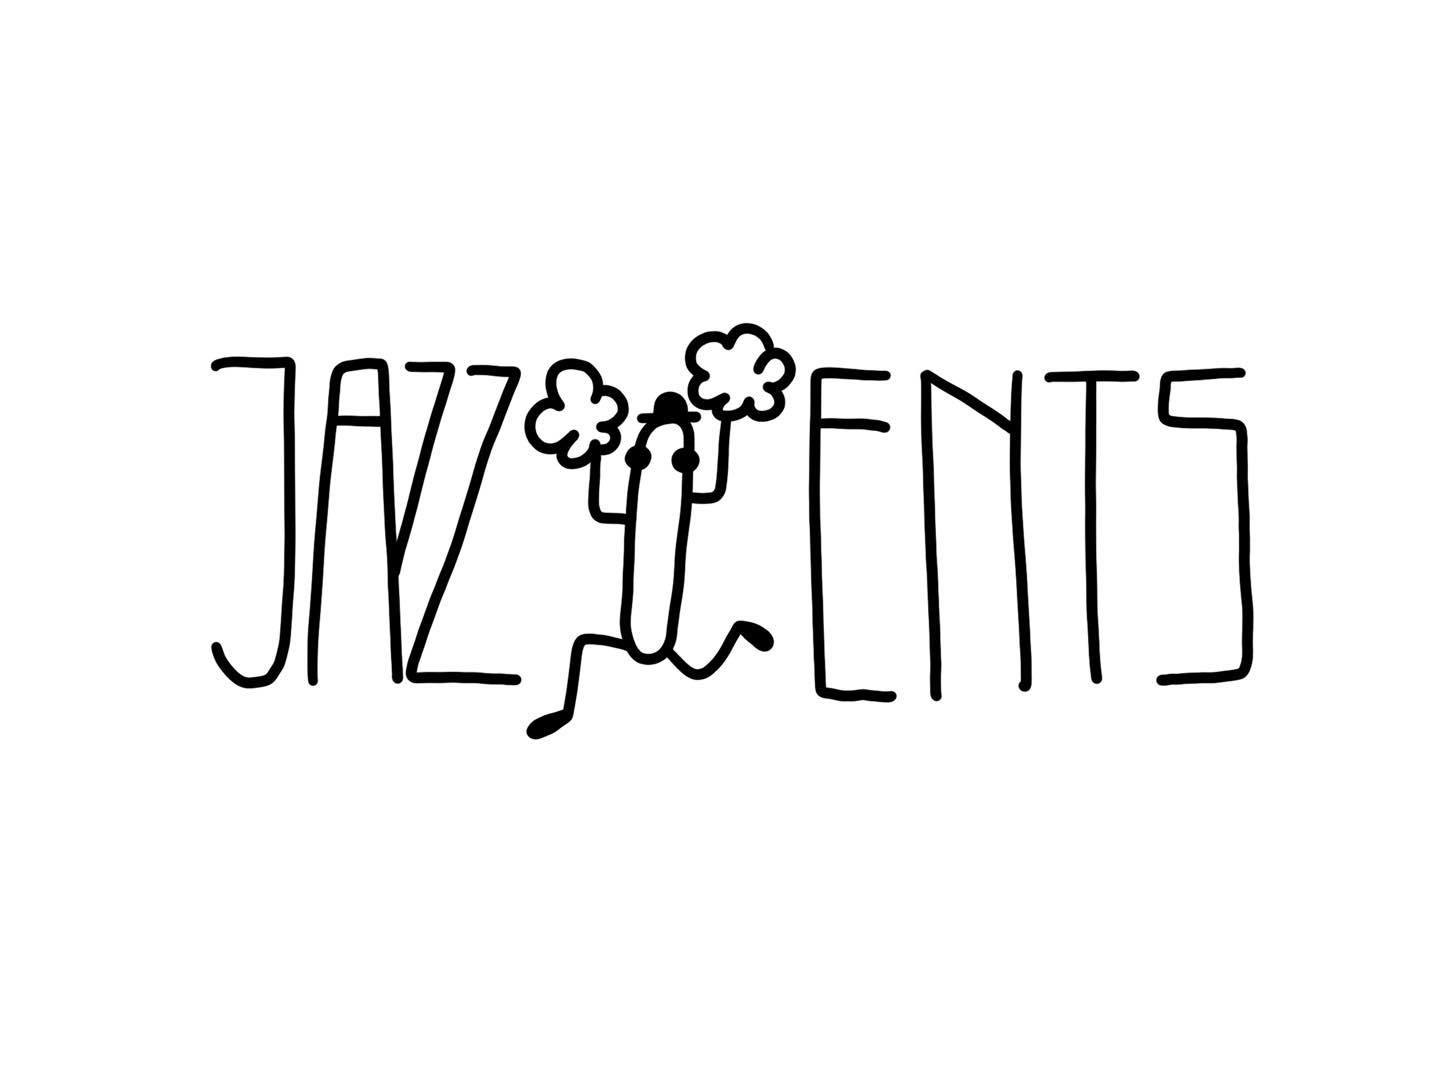 Jazz Ents